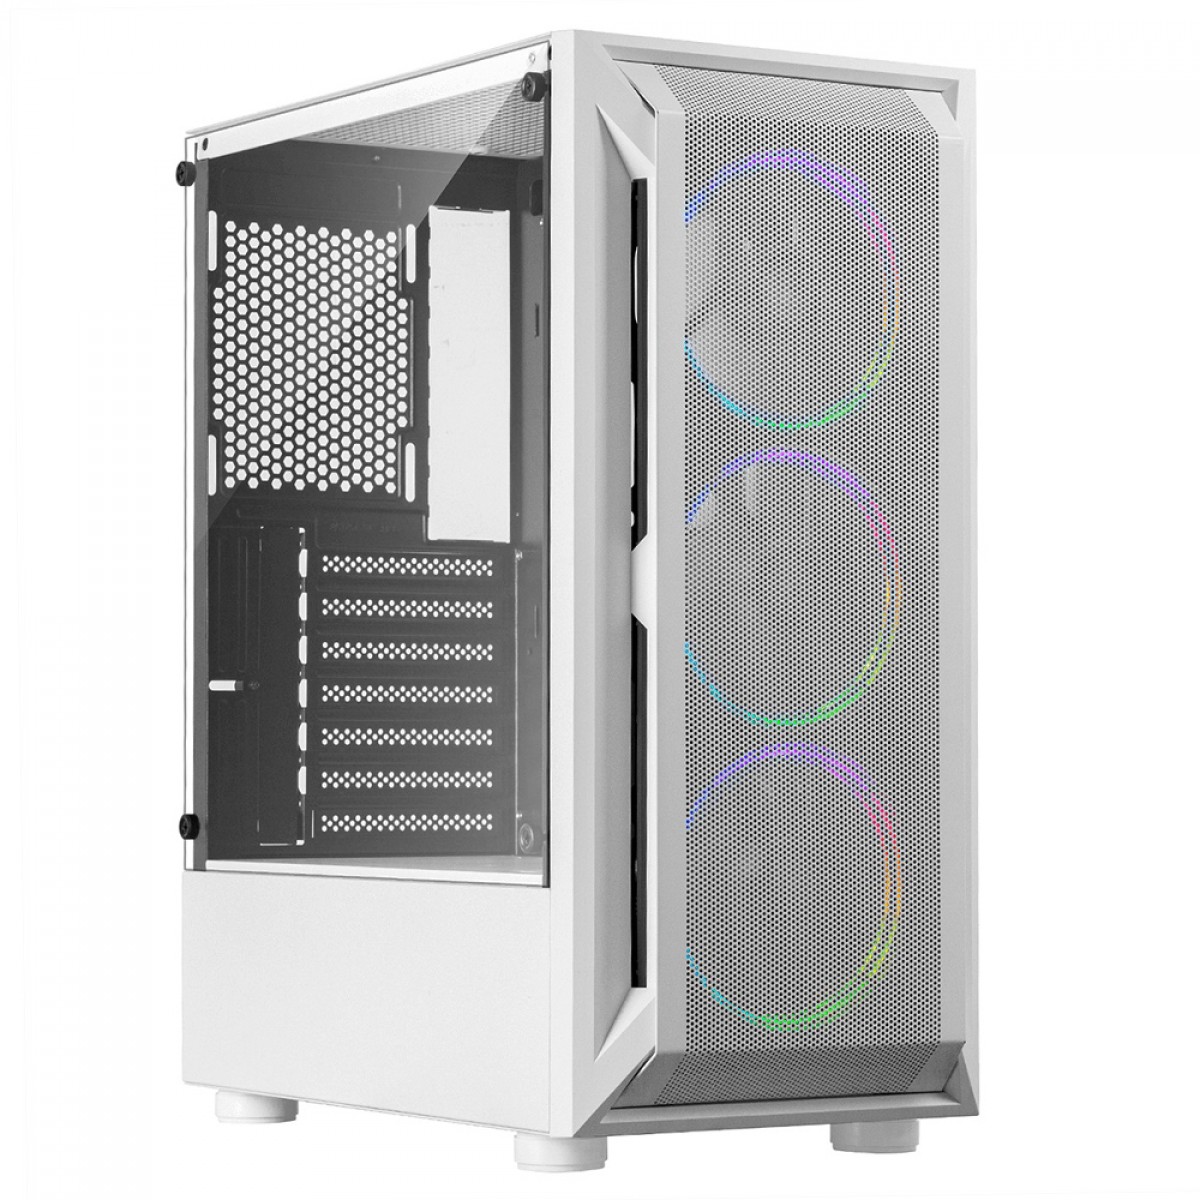 PC Gamer Completa AMD Athlon 3000g 16GB DDR4 240GB SSD Radeon RX550 4GB  DDR5 WiFi + Monitor LED 19'' + Combo